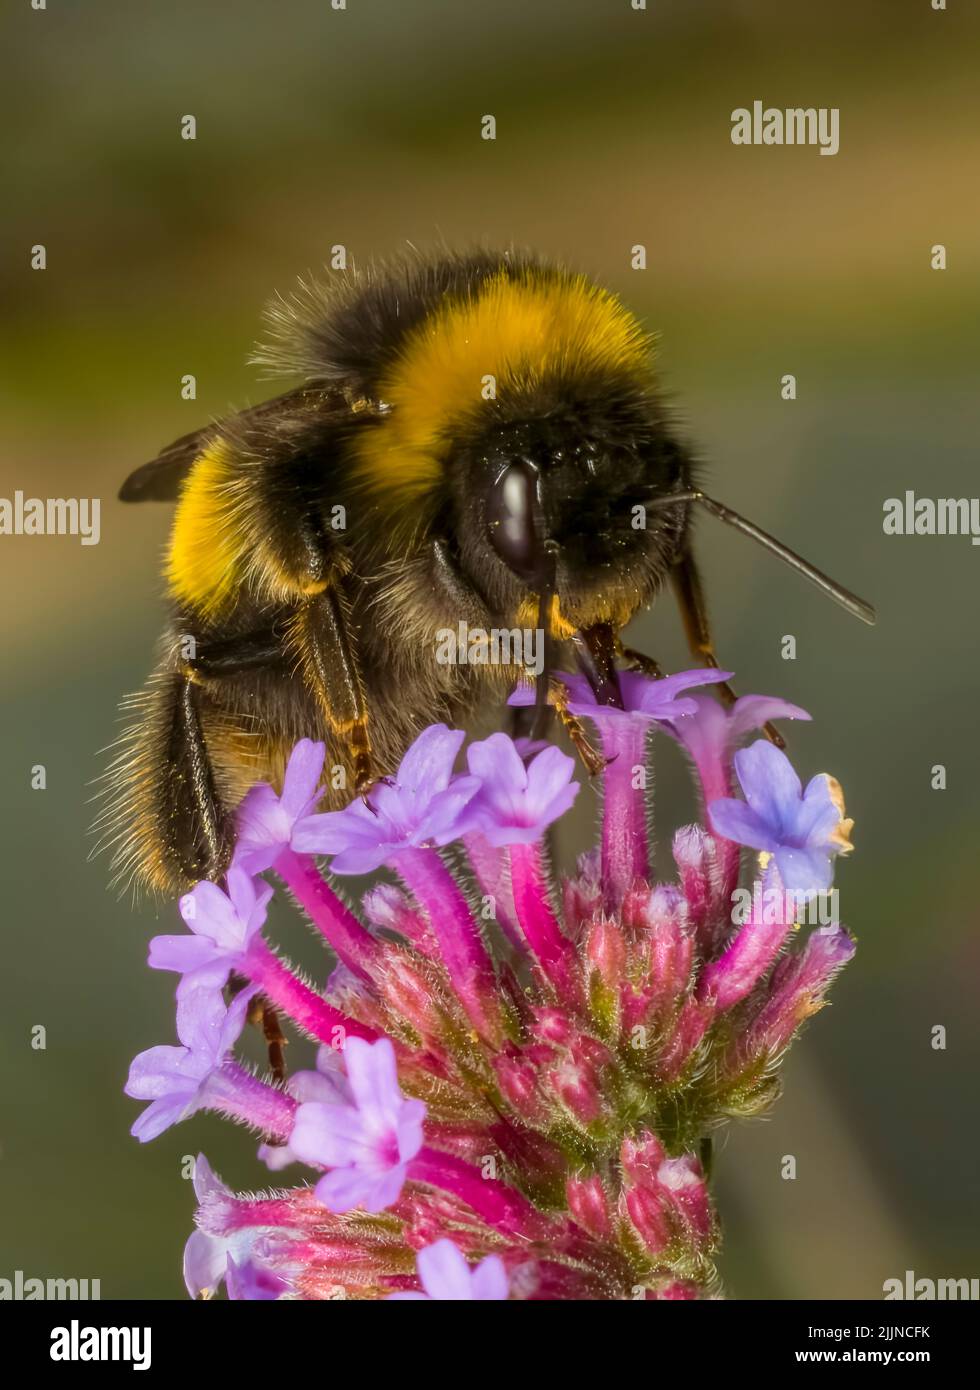 Una abeja de cola blanca pollenando una flor de Verbena púrpura Foto de stock